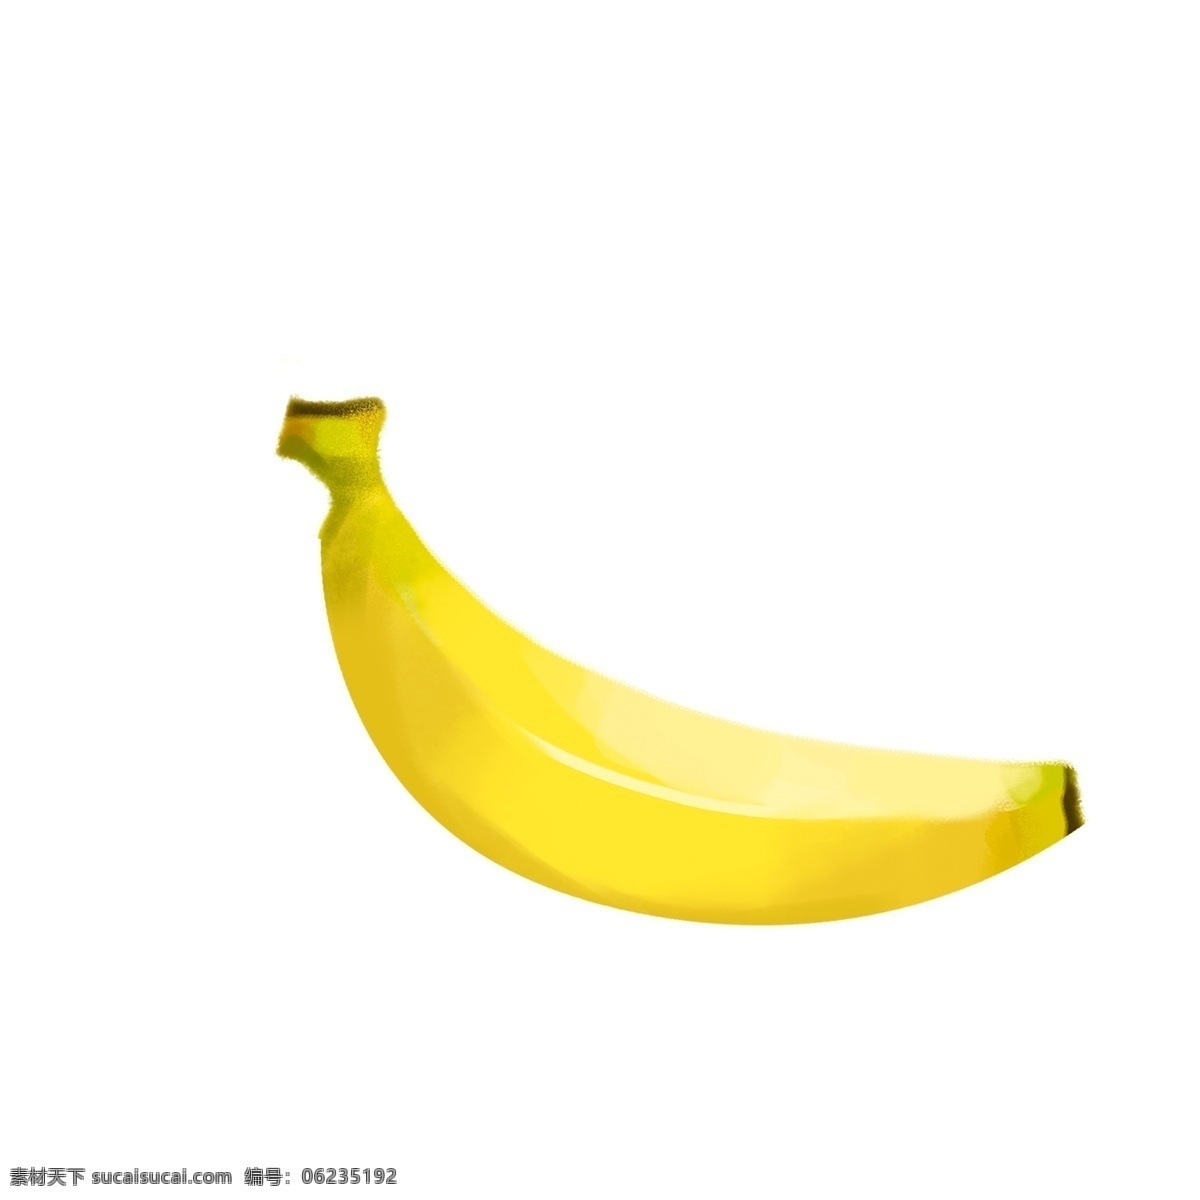 一根 黄色 香蕉 卡通香蕉 黄色香蕉 水果插图 美味水果 可口水果 卡通插图 创意卡通 插图 png图下载